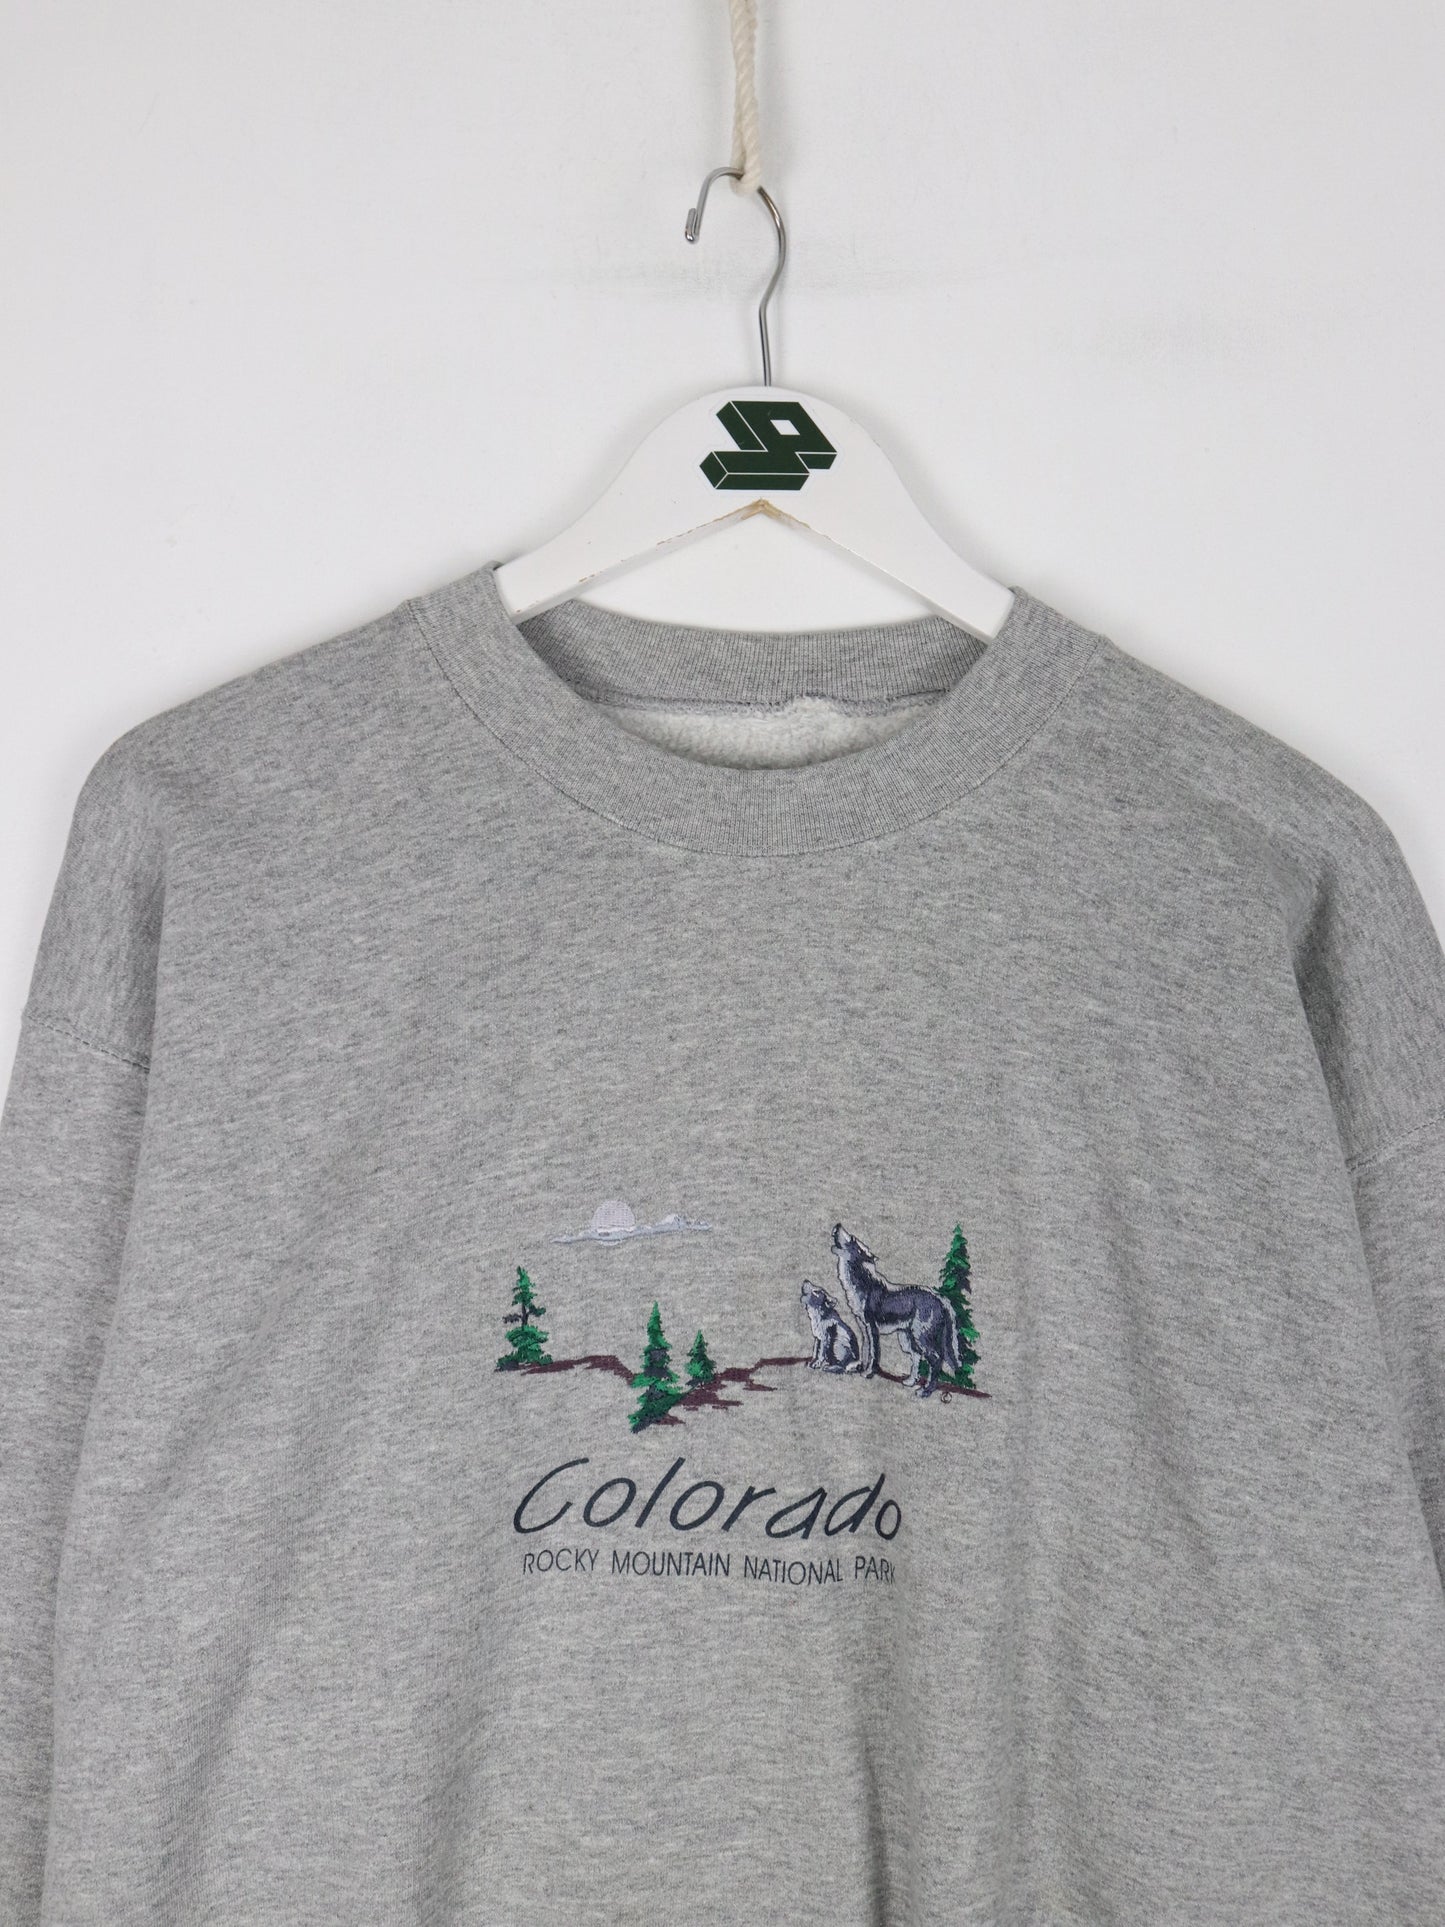 Vintage Colorado Sweatshirt Mens Medium Grey Rocky Mountain Park